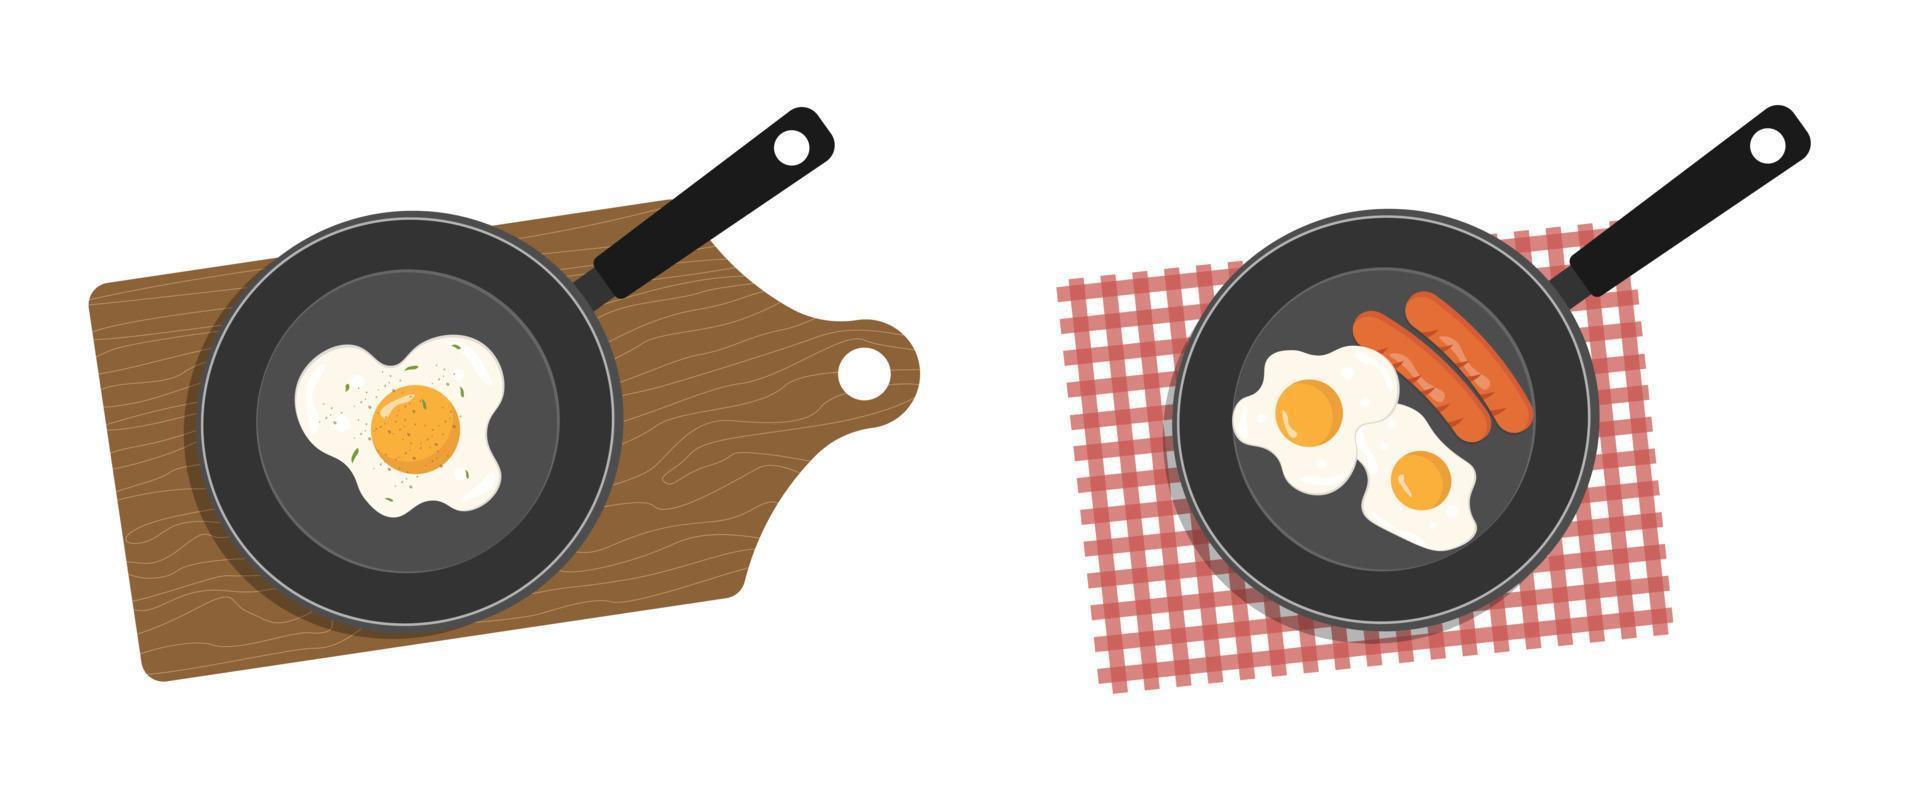 äggula omelett i en stekpanna. frukost i panna med ägg, gröna ärtor och korv. vektor